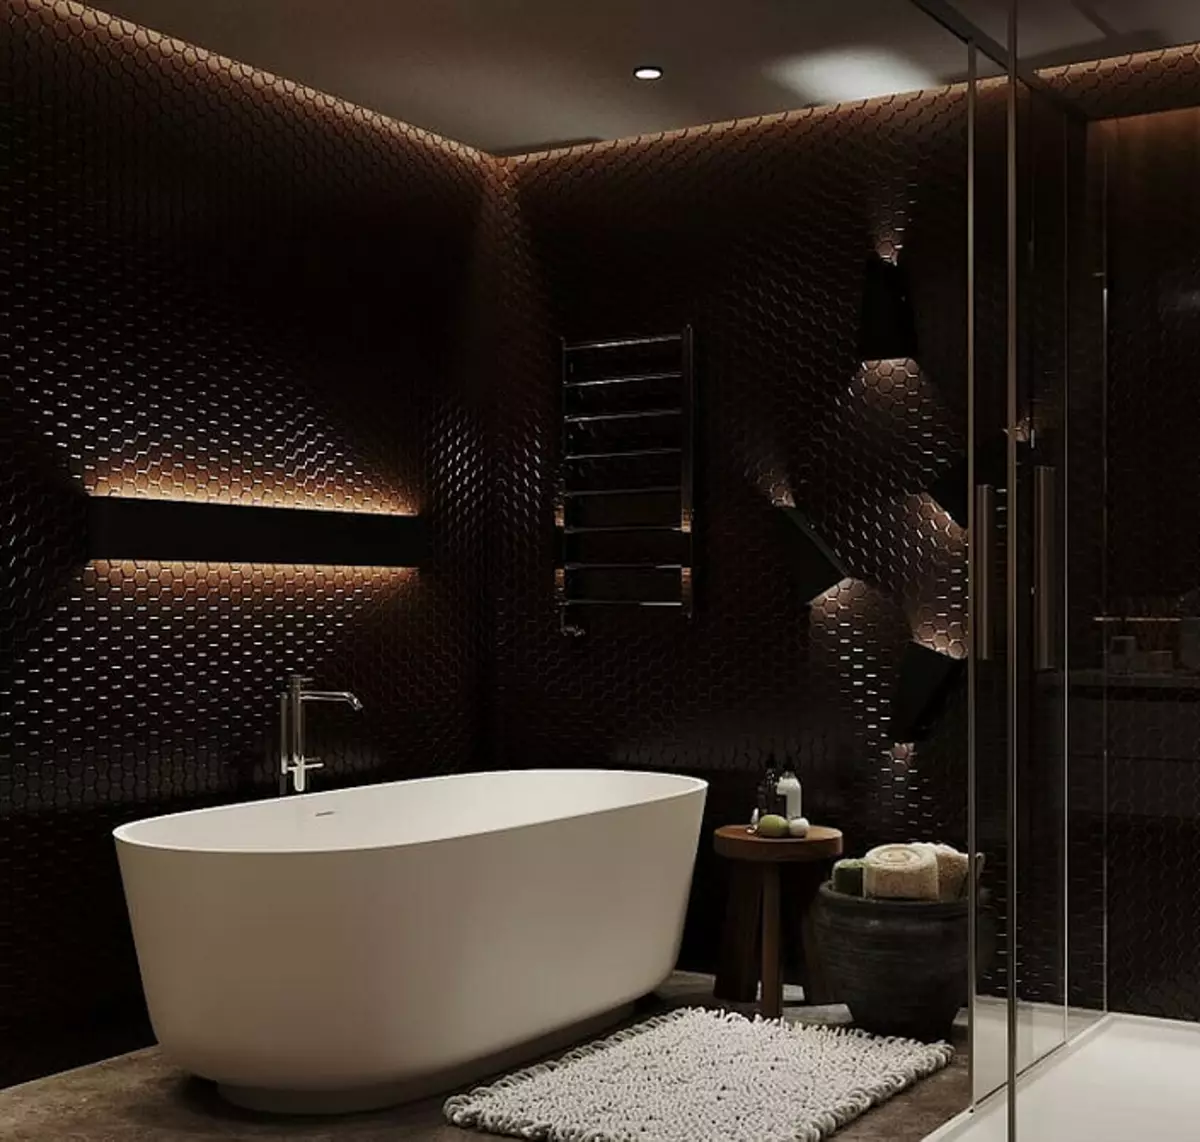 Diseño de baño con ducha y baño: ideas interiores en 75 fotos - IVD.RU 4108_74